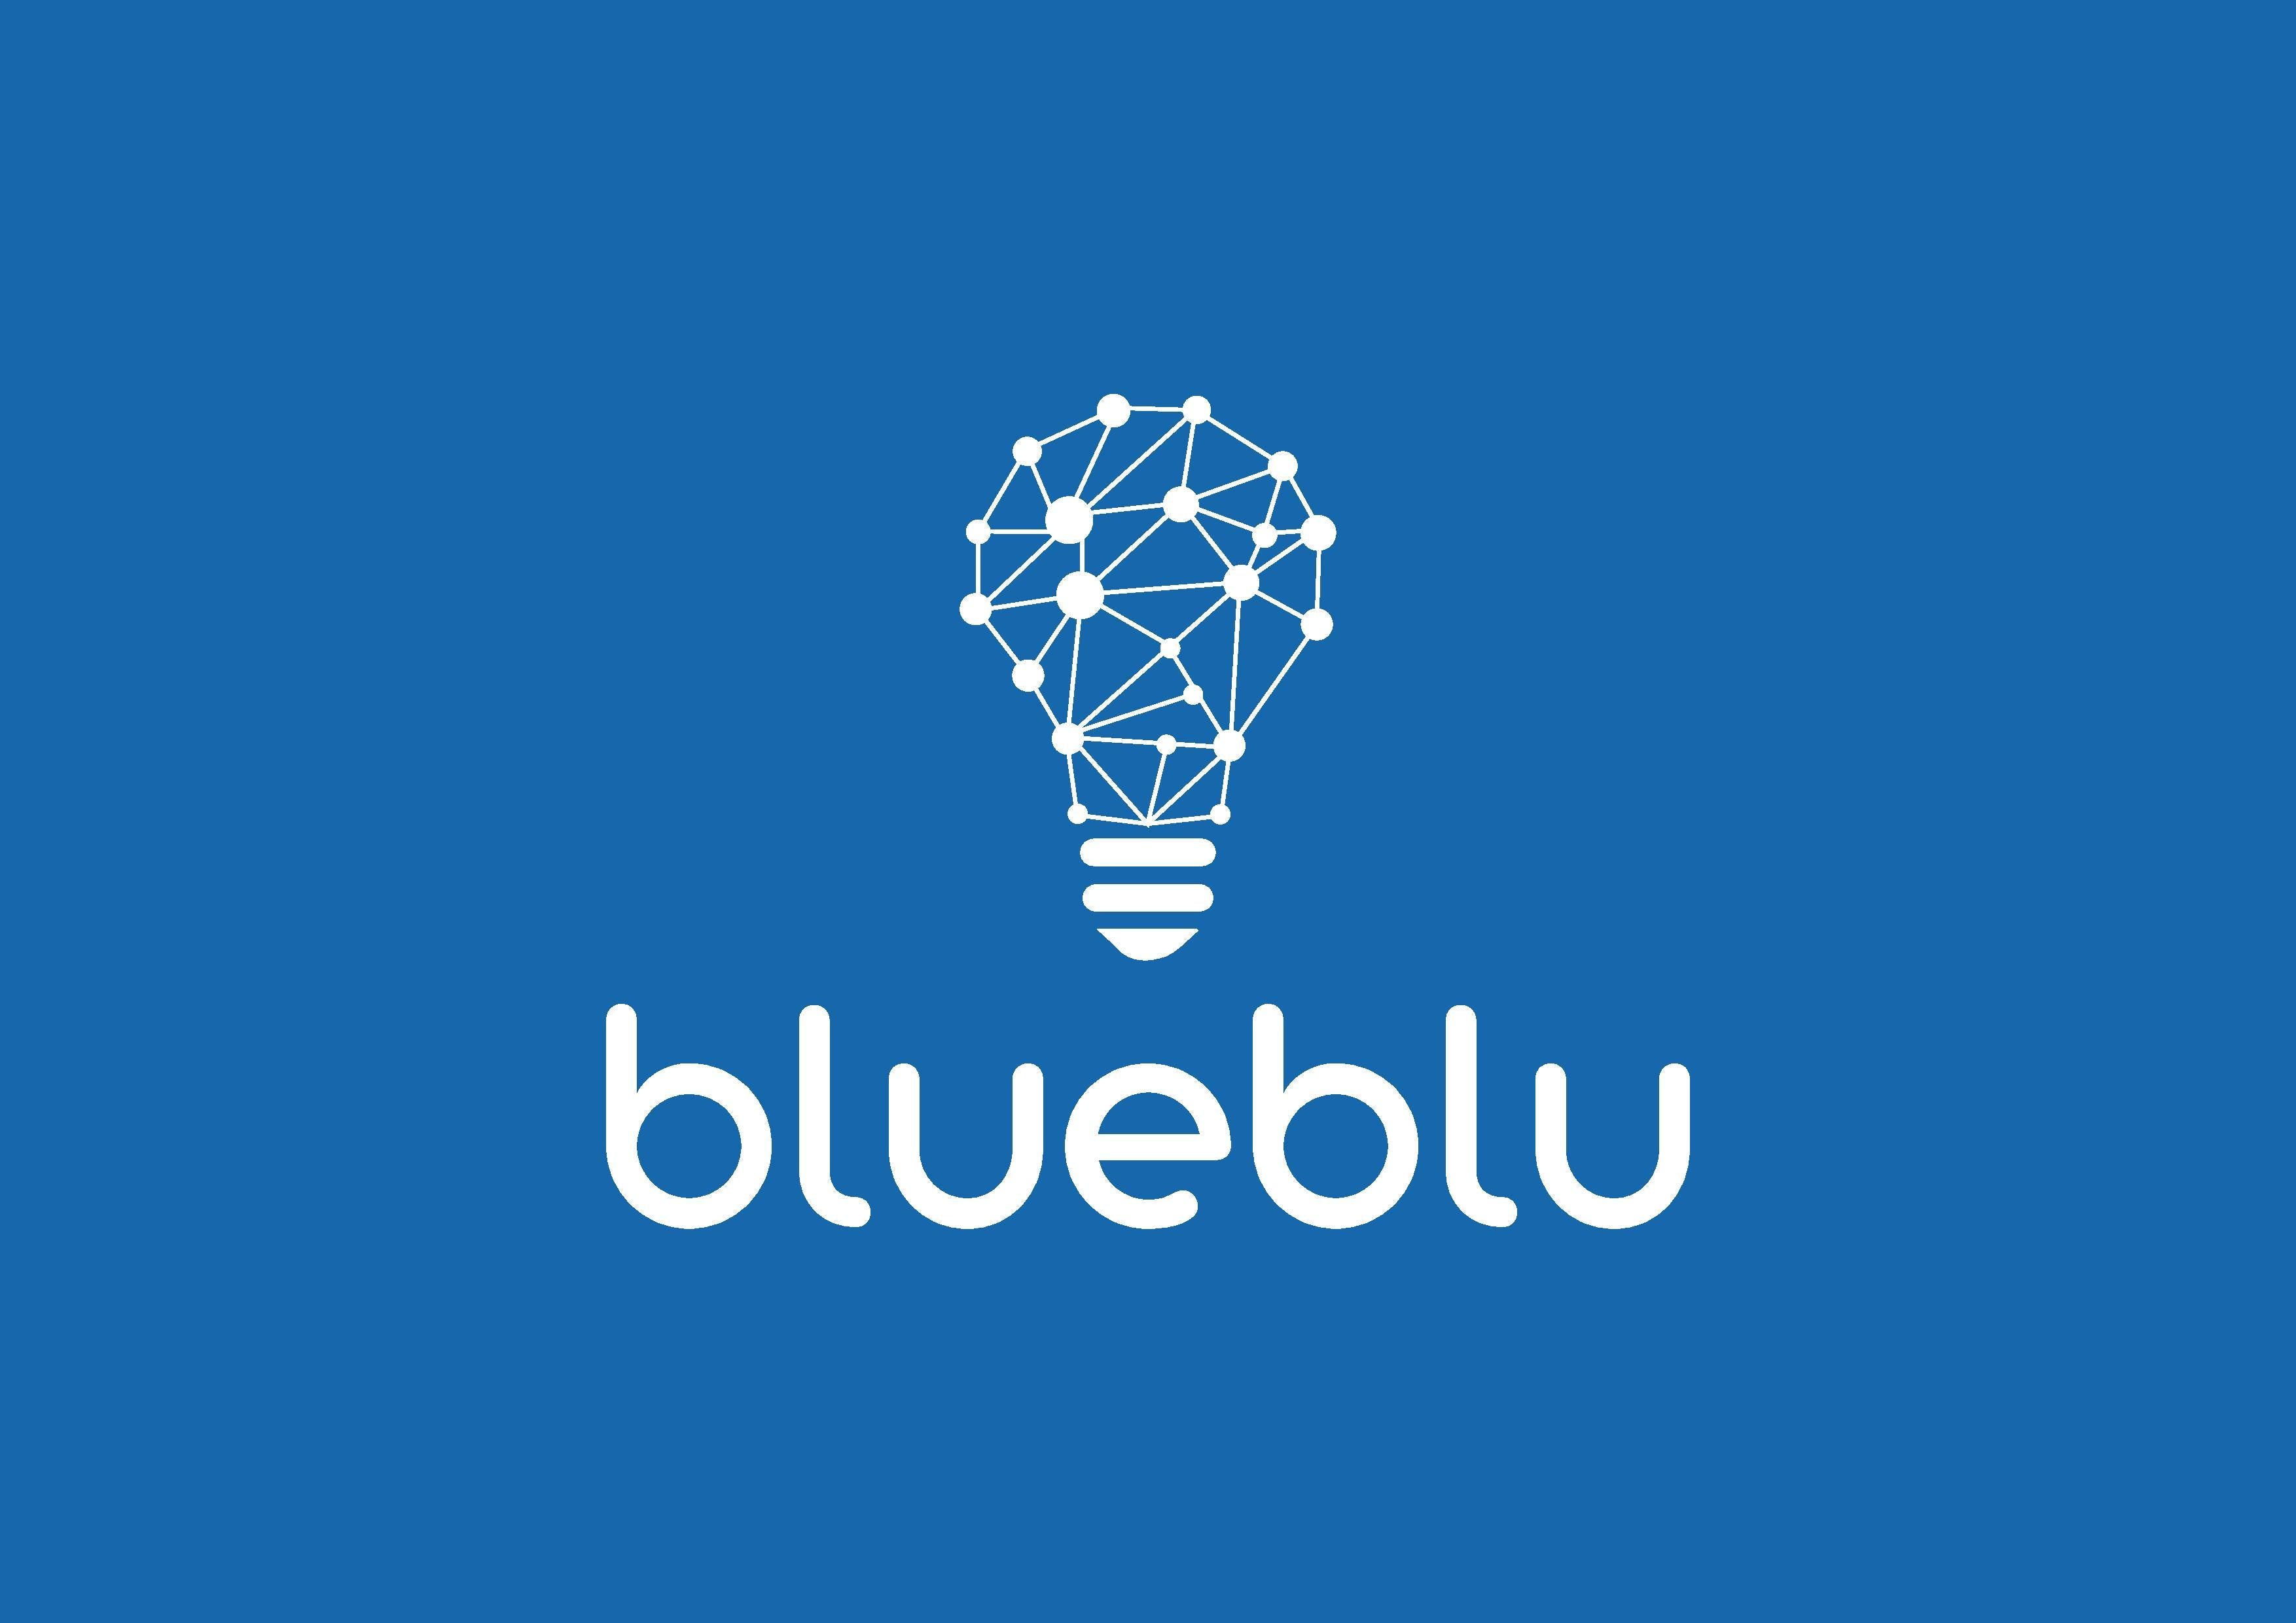 Blueblu – BlueBlu